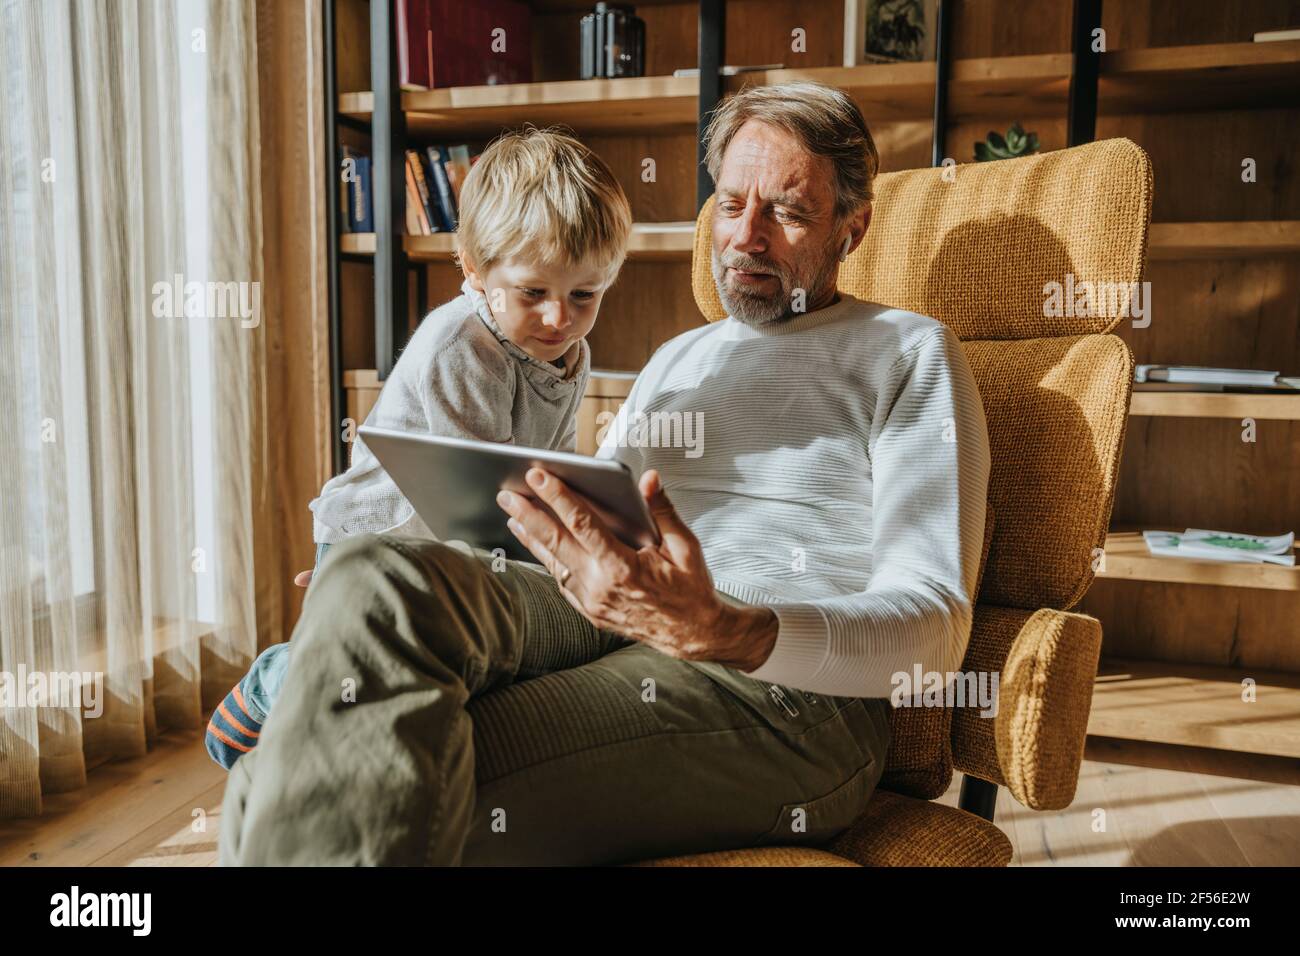 Un jeune garçon curieux qui regarde son père en utilisant une tablette numérique à la maison Banque D'Images